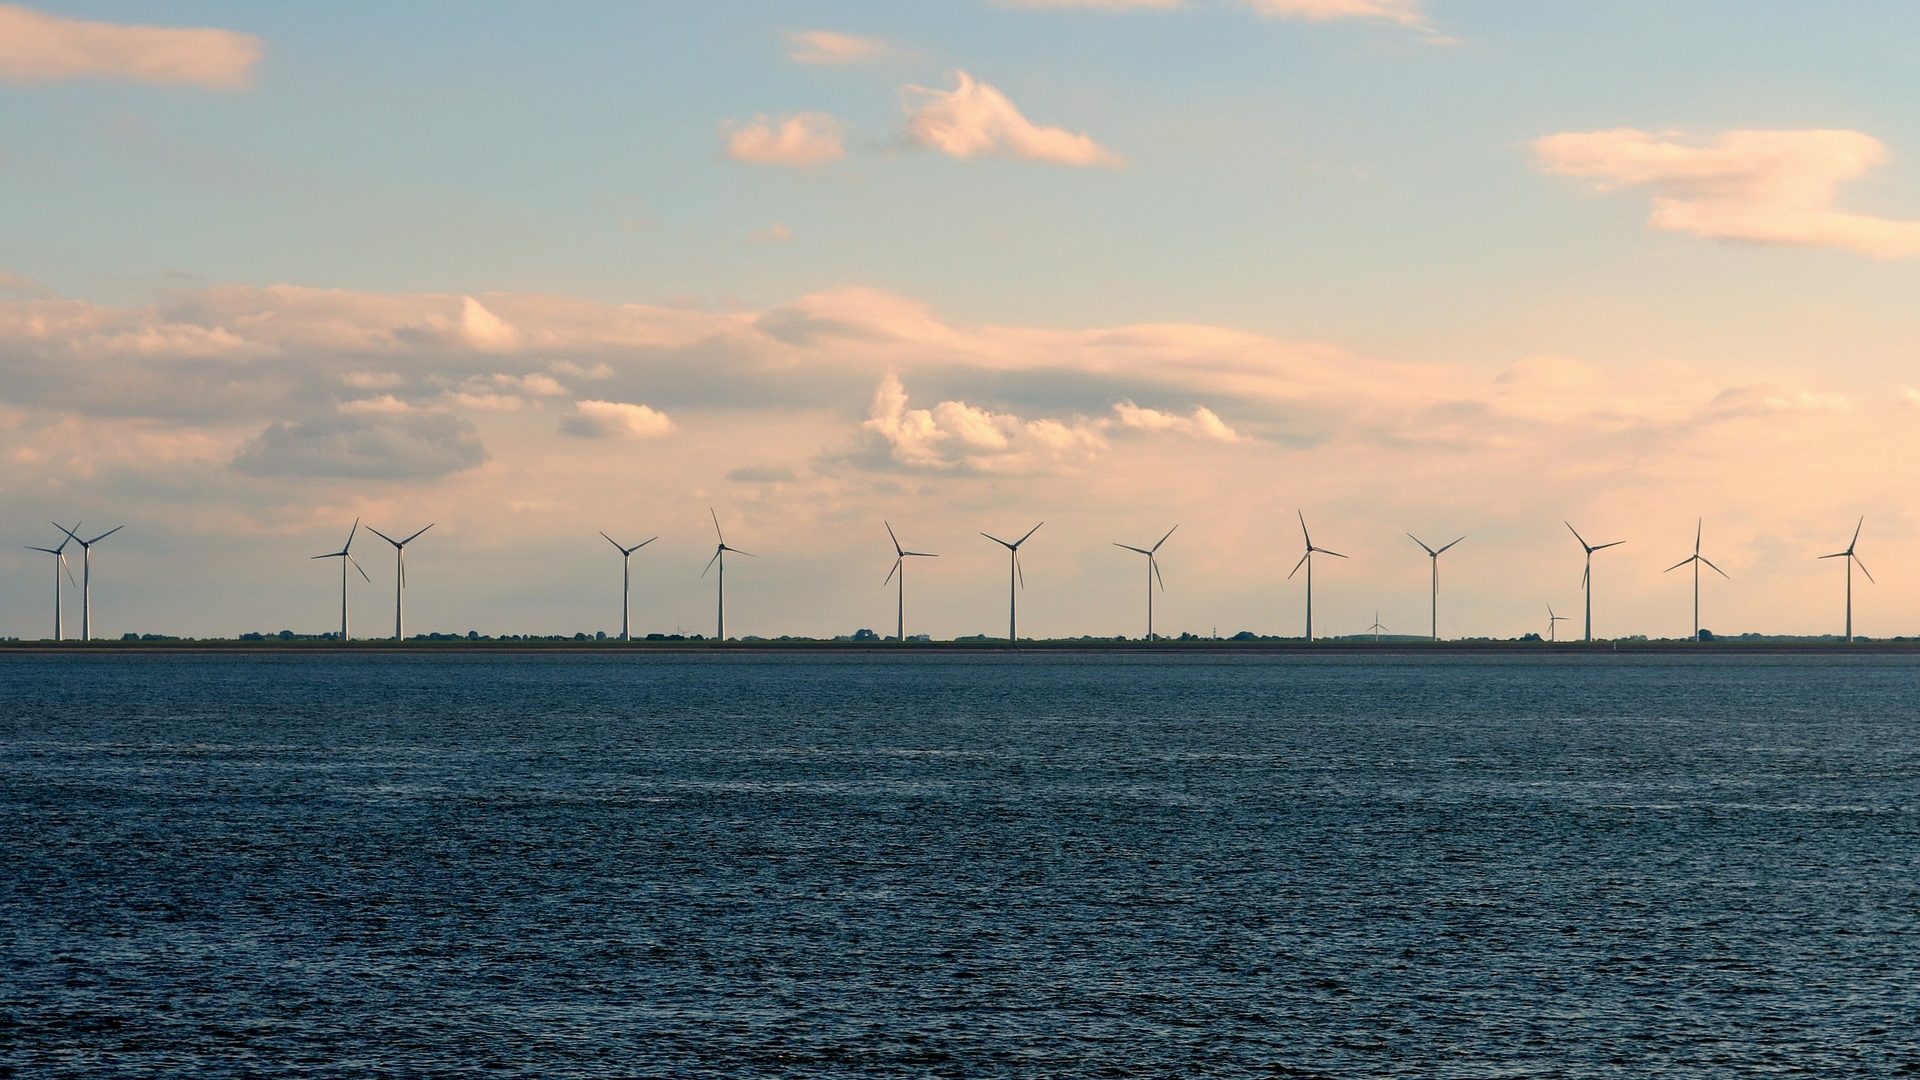 Colômbia inicia trâmites para primeiro leilão de geração eólica offshore da América Latina. Na imagem: Turbinas eólicas em alto mar para geração offshore (Foto: Elke/Pixabay)